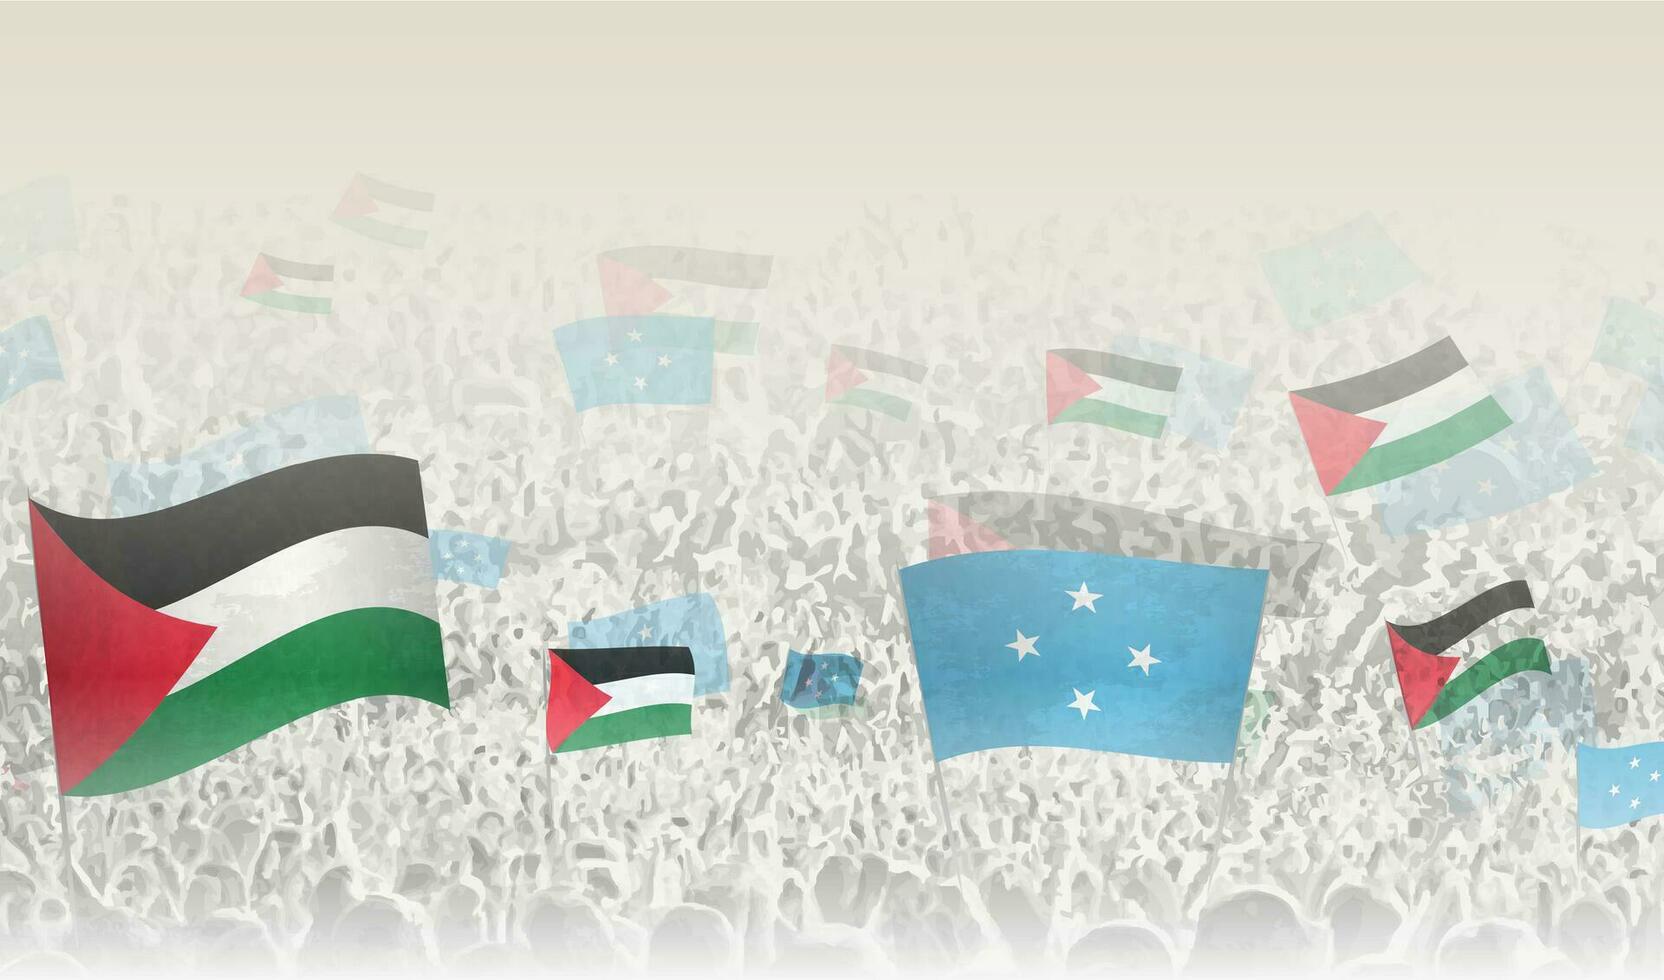 palestina och micronesia flaggor i en folkmassan av glädjande människor. vektor